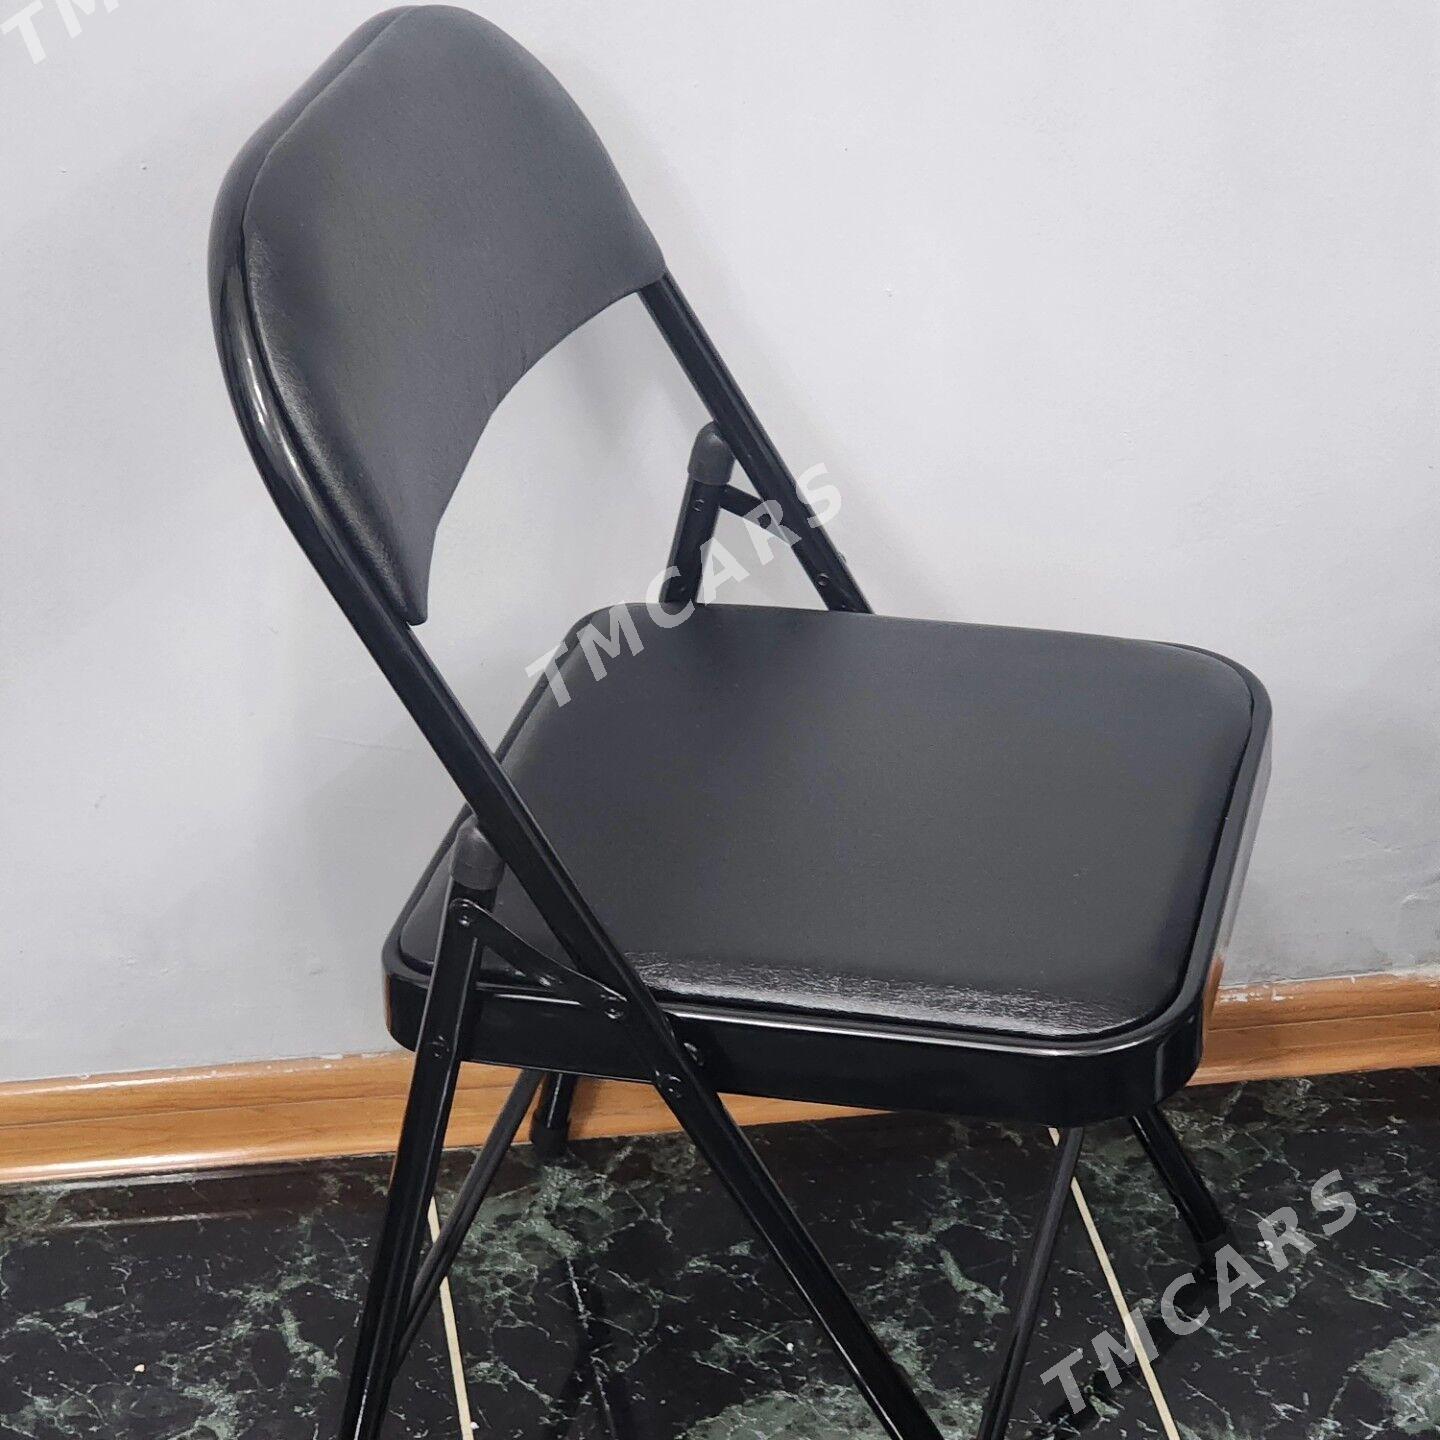 Stul oturgyç kresla стул stol - Parahat 2 - img 2